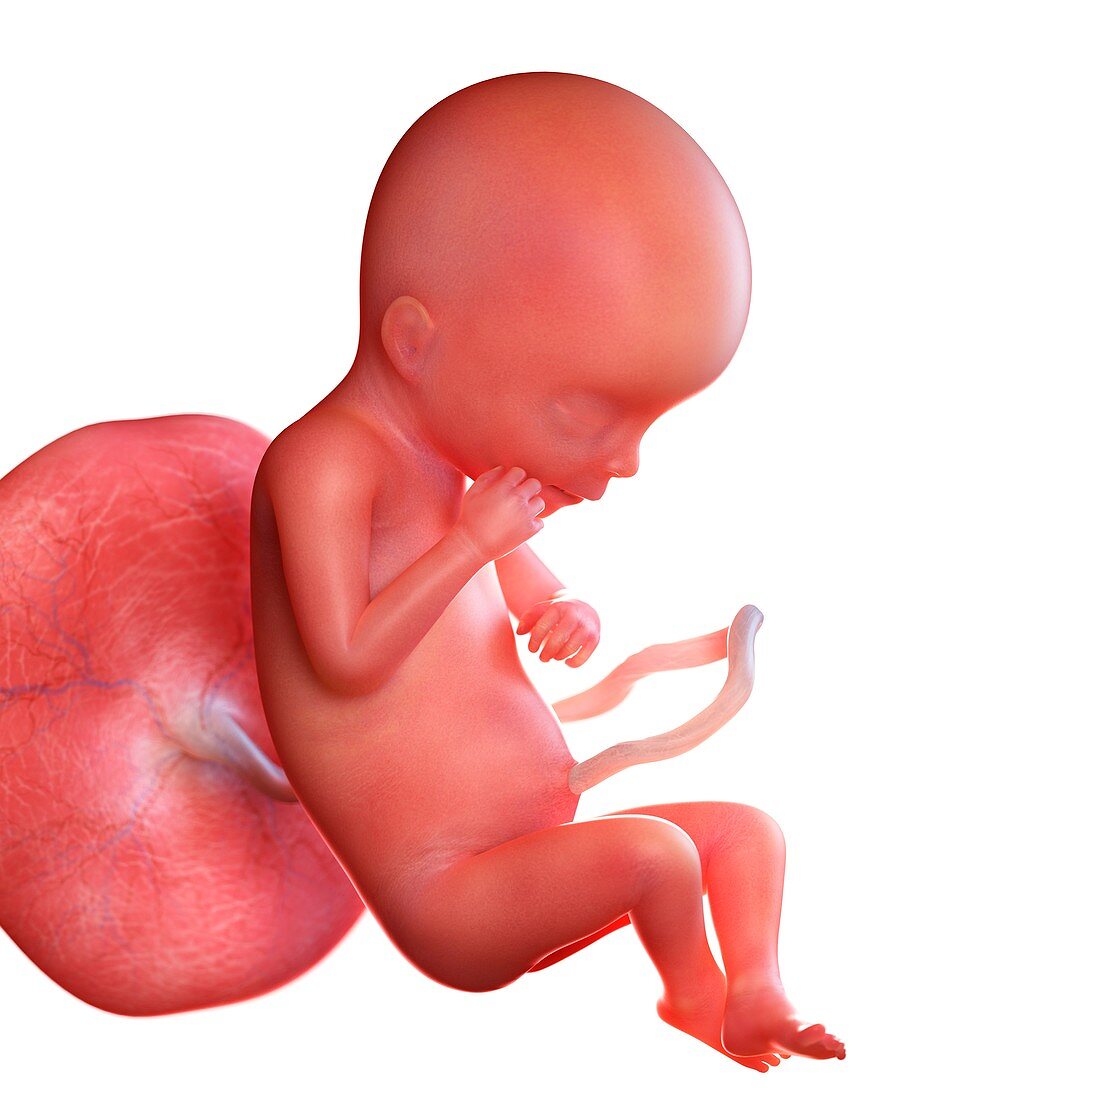 Human foetus age 19 weeks, illustration